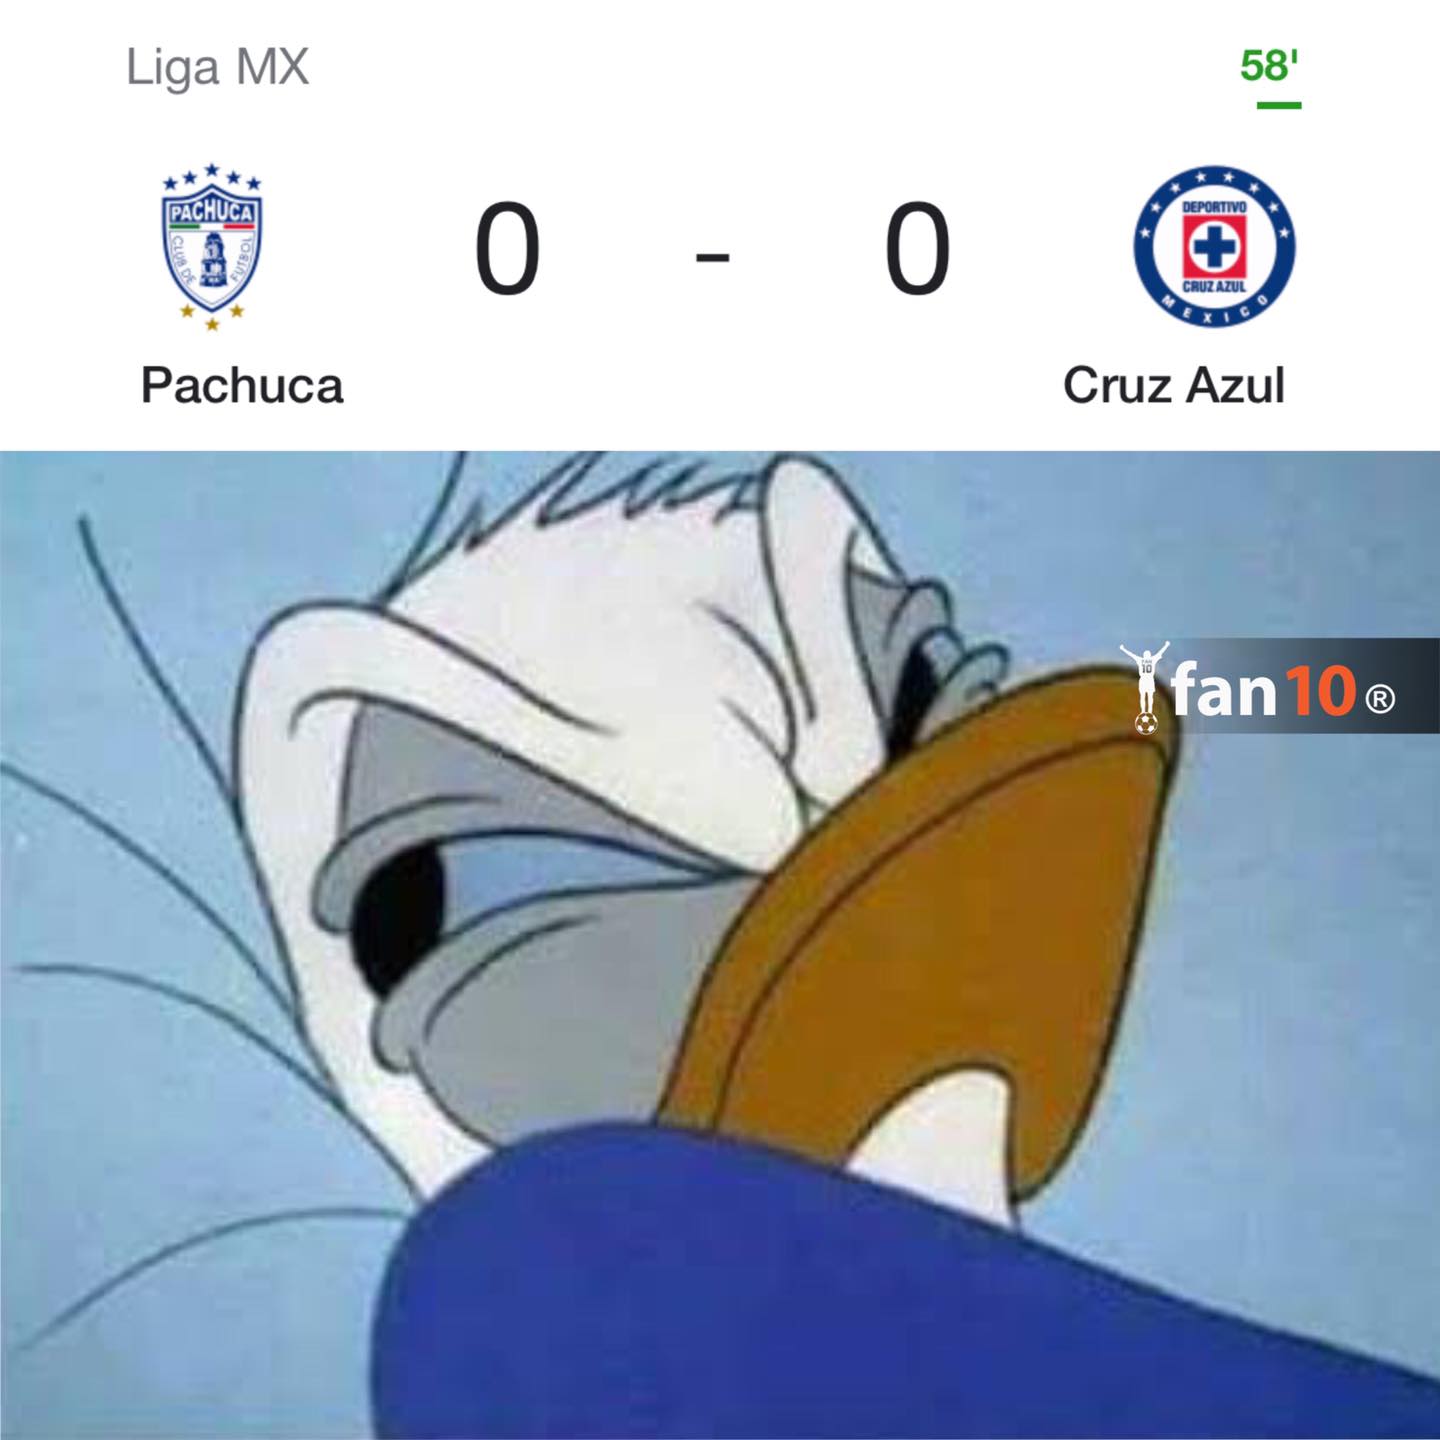 Memes de Semifinales de la Liga Mx, GTA VI y Luis Miguel: La Serie